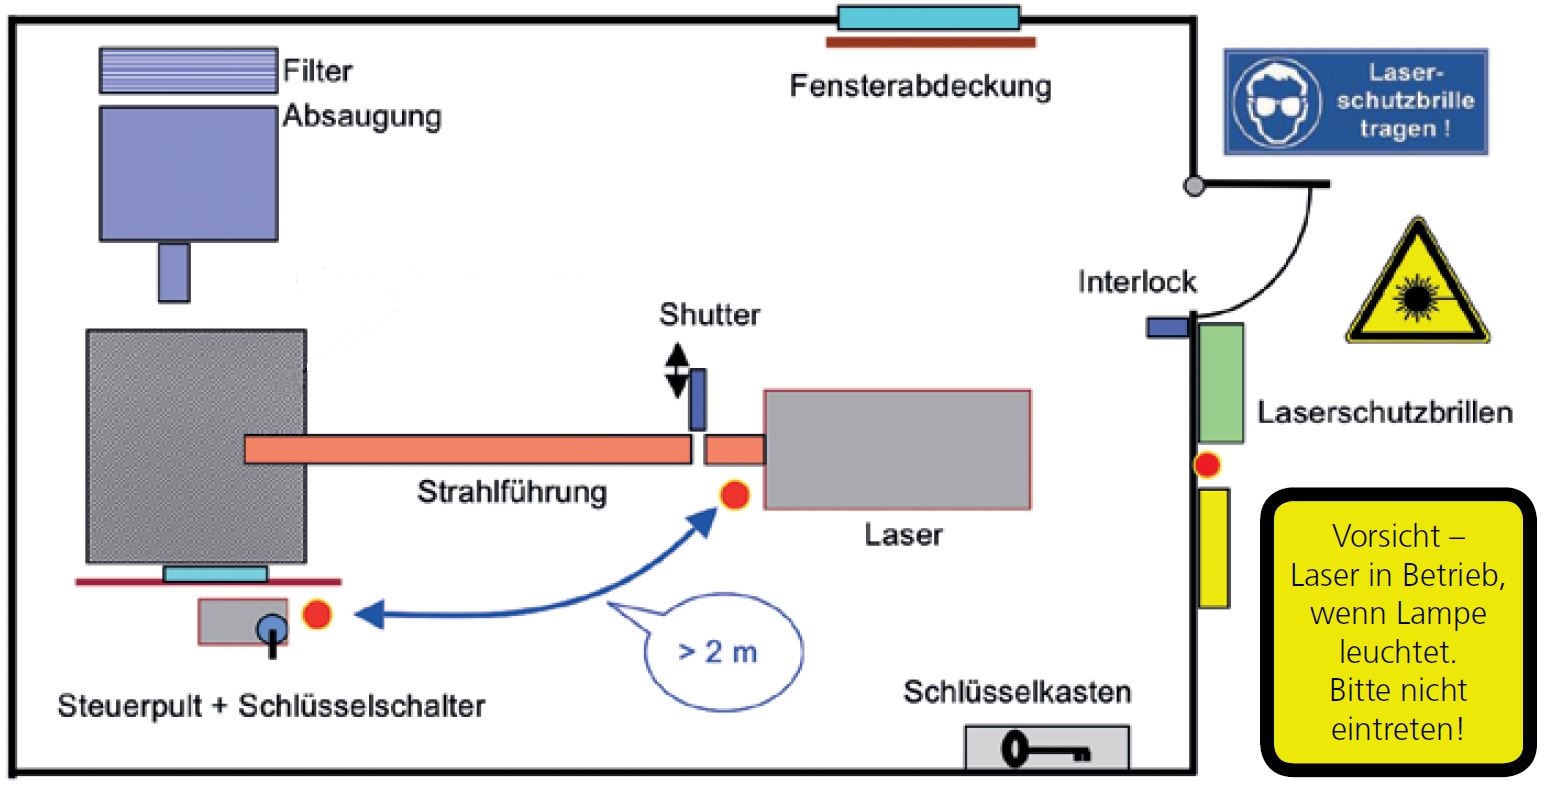 Skizze eines Lasergefahrenbereiches bei einer offenen, zugänglichen Laserprozesszone (aus AUVA Merkblatt M080)